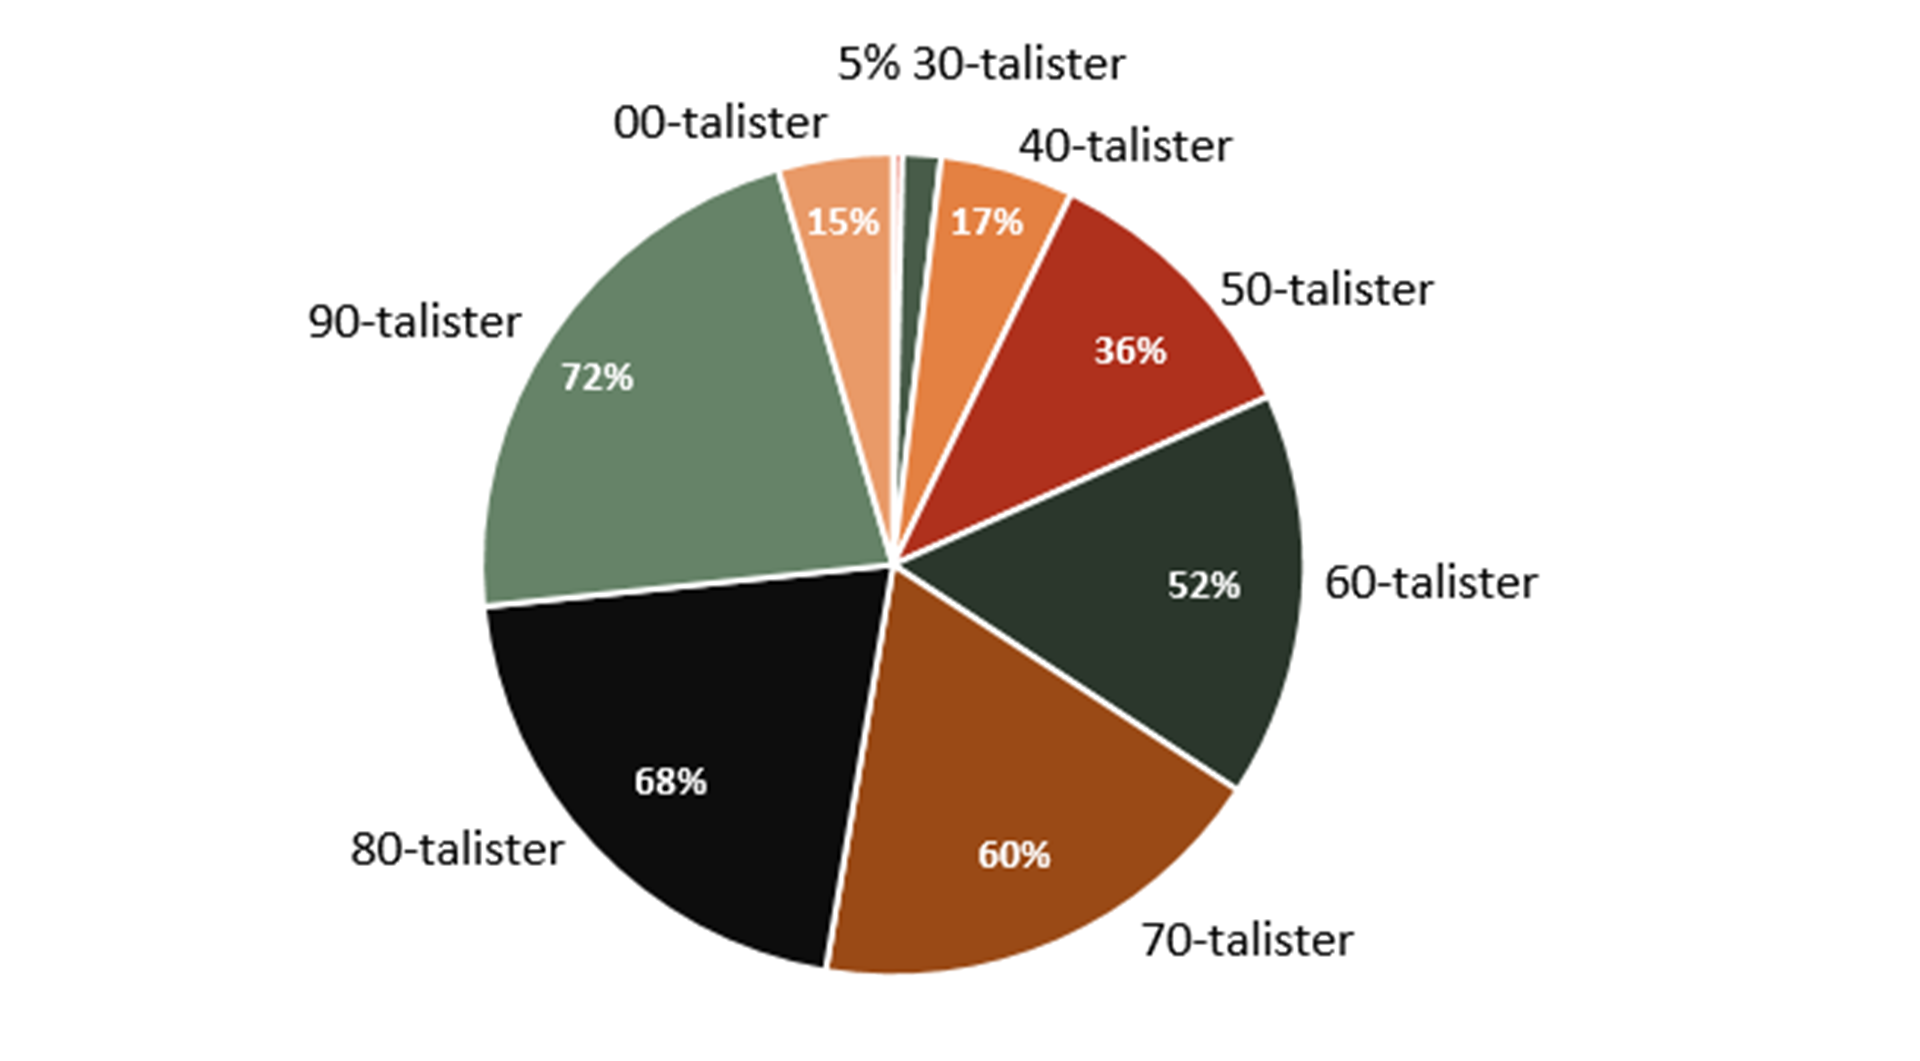 Ett diagram visar att i mars hade 72% 90-talister, 68% 80-talister, 60% 70-talister, 52% 60-talister, 36% 50-talister, 17% 40-talister och 15% 00-talister en digital brevlåda.